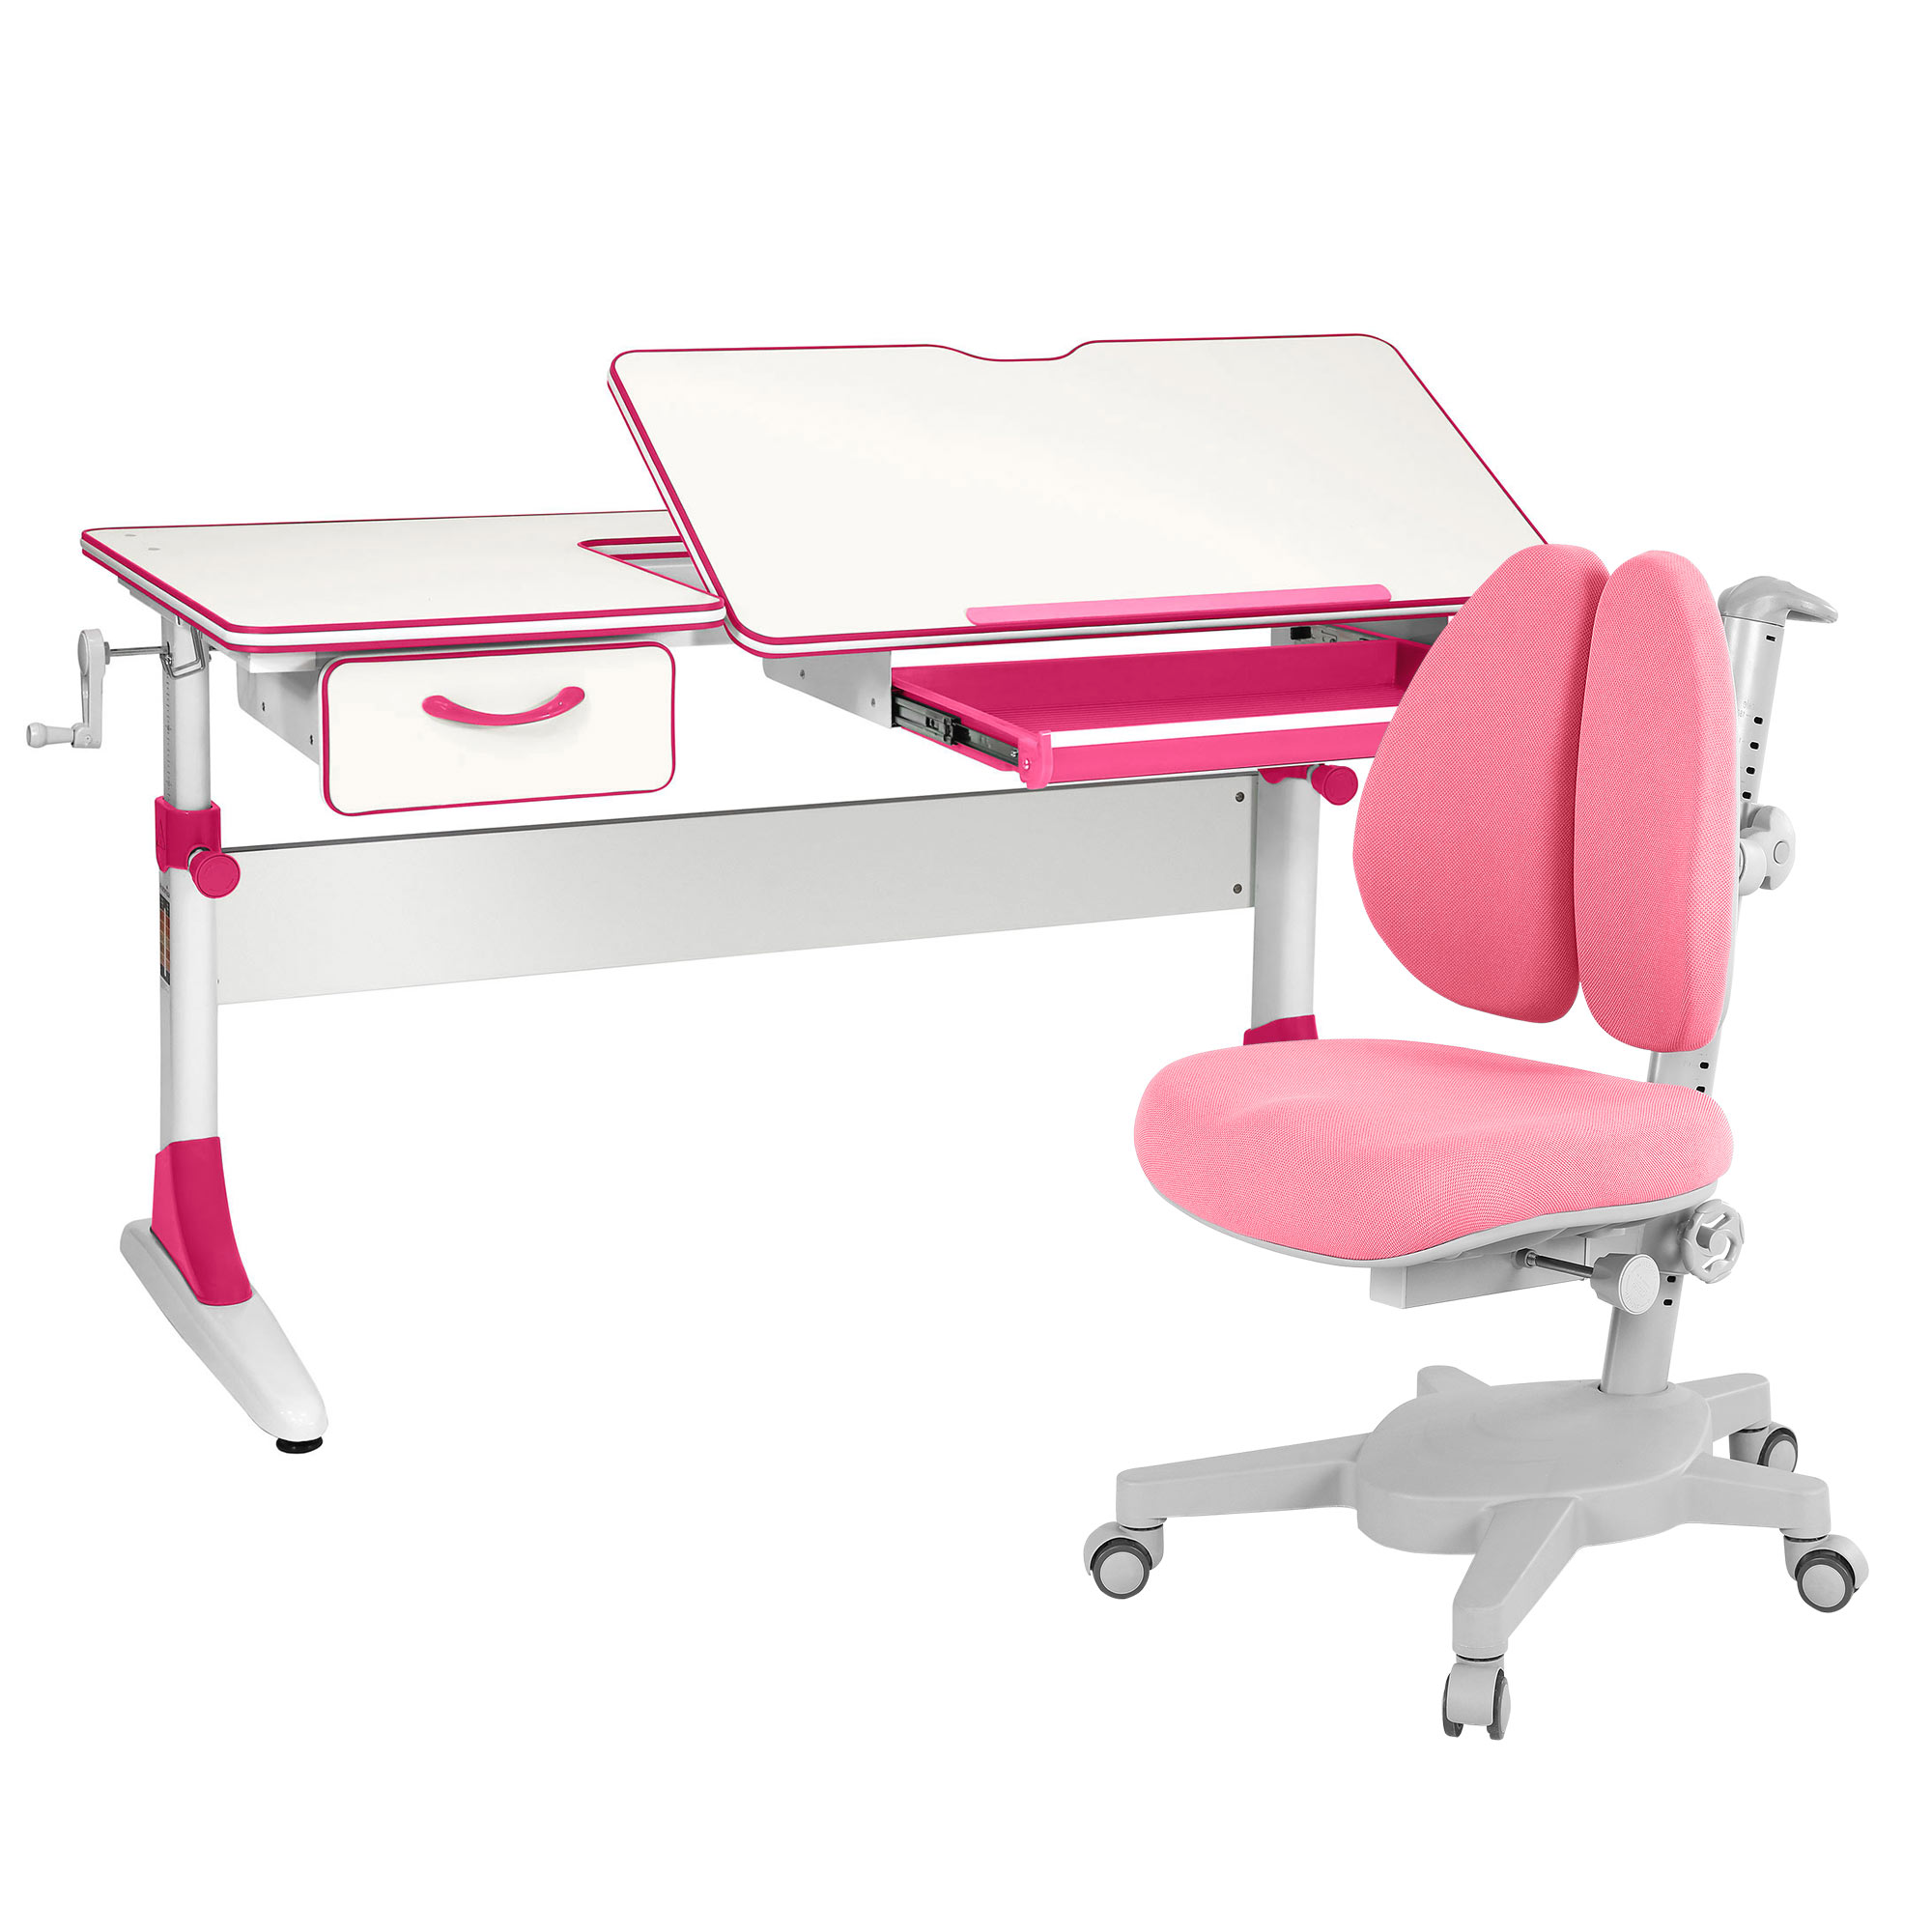 Комплект парта Anatomica Study-120 белый, розовый с розовым креслом Armata Duos комплект парта anatomica study 100 lux белый розовый с розовым креслом figra